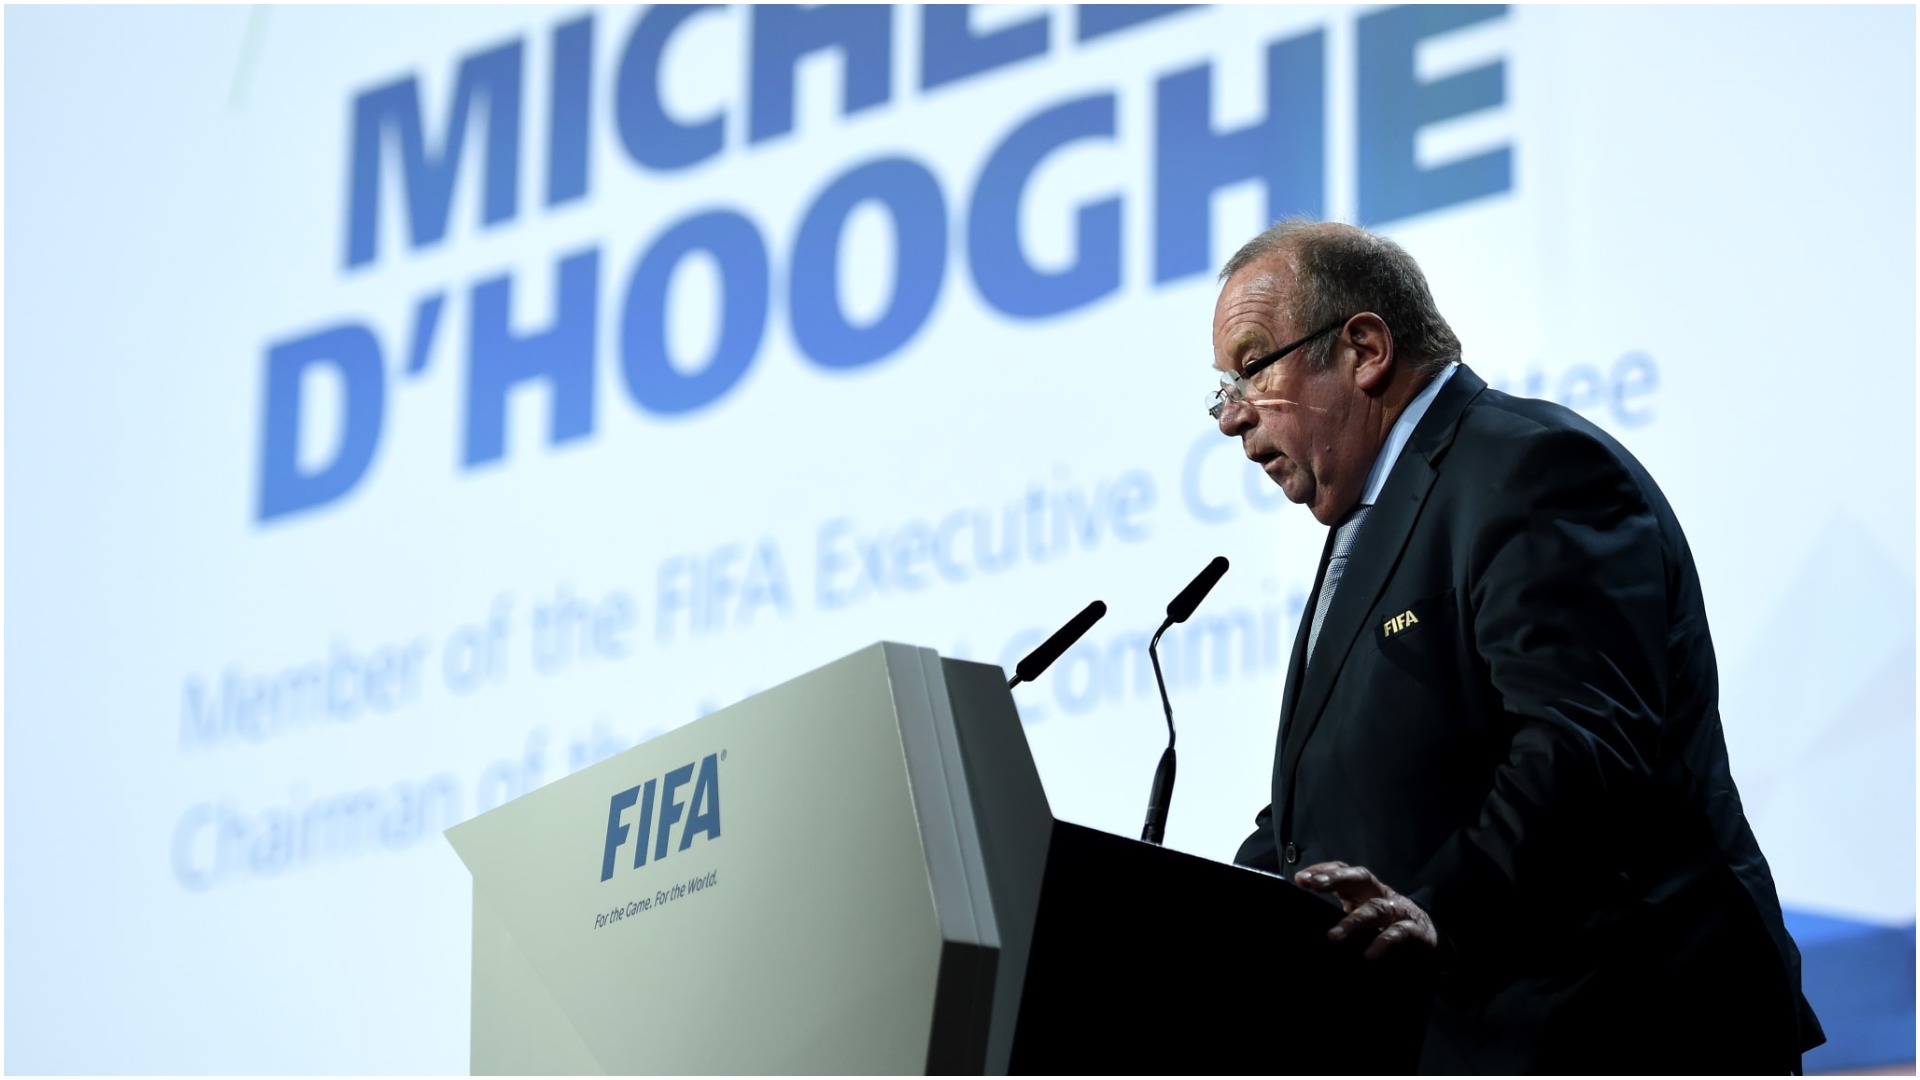 D’Hooghe, president në FIFA: Harrojeni futbollin, të qëndrojmë realistë